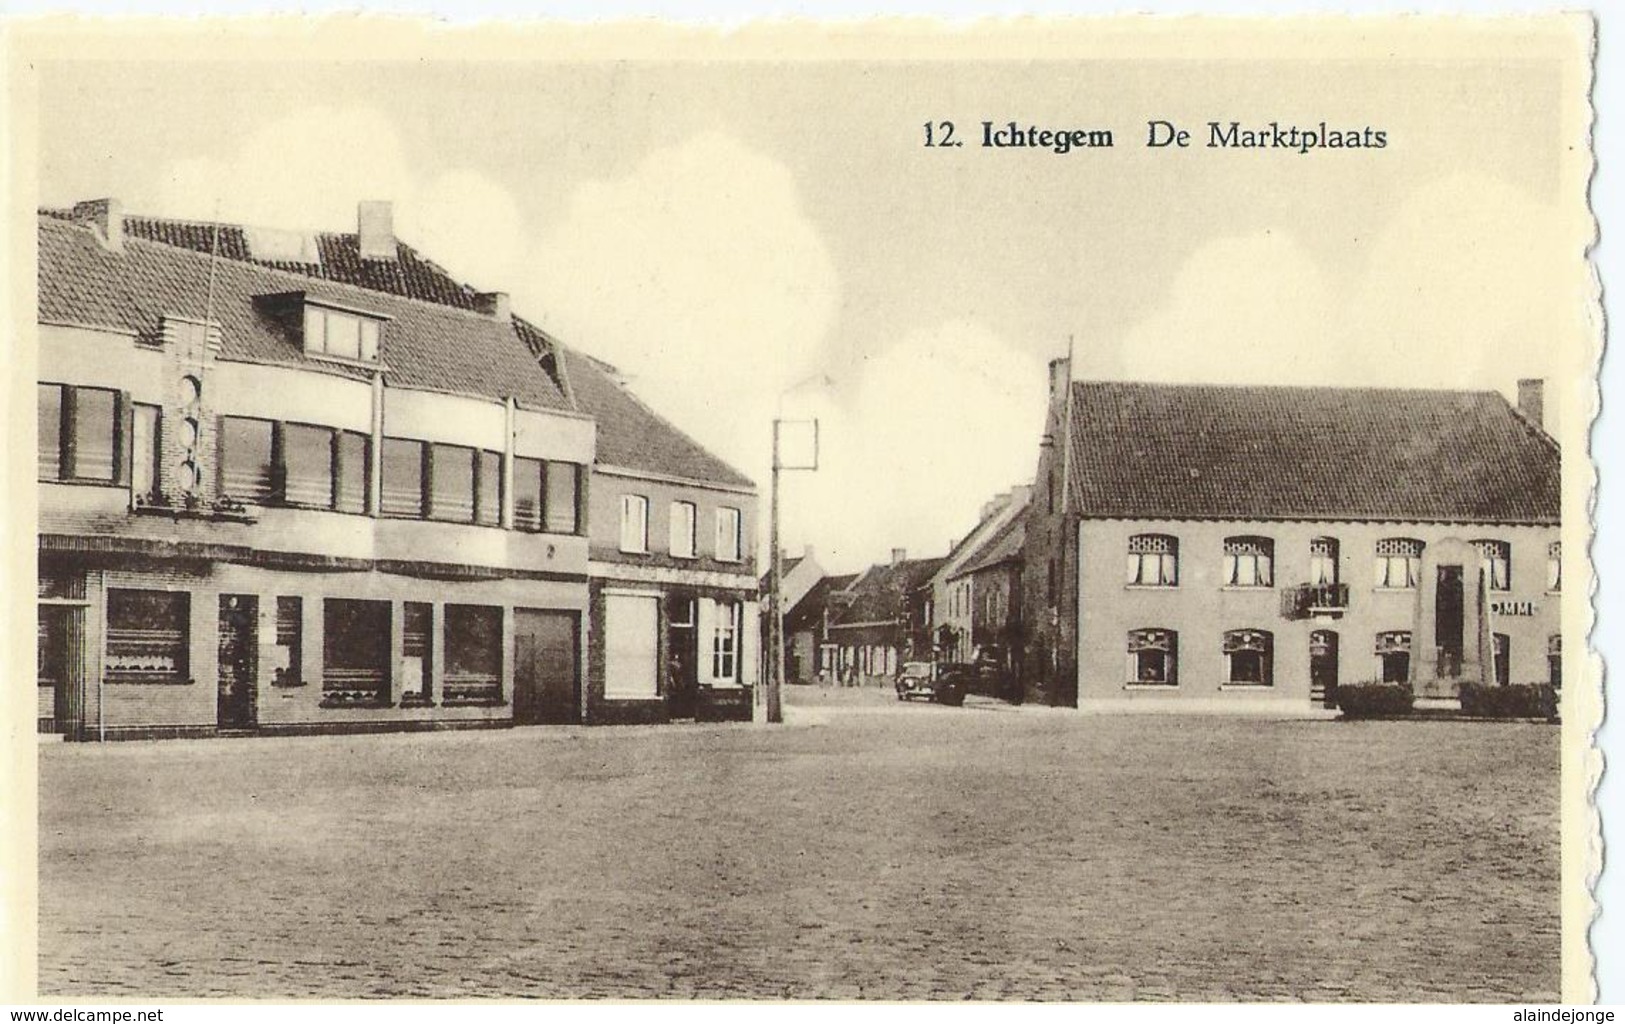 Ichtegem - De Marktplaats - No 12 - Uitgave Drukkerij Martens, Ichtegem - Ichtegem